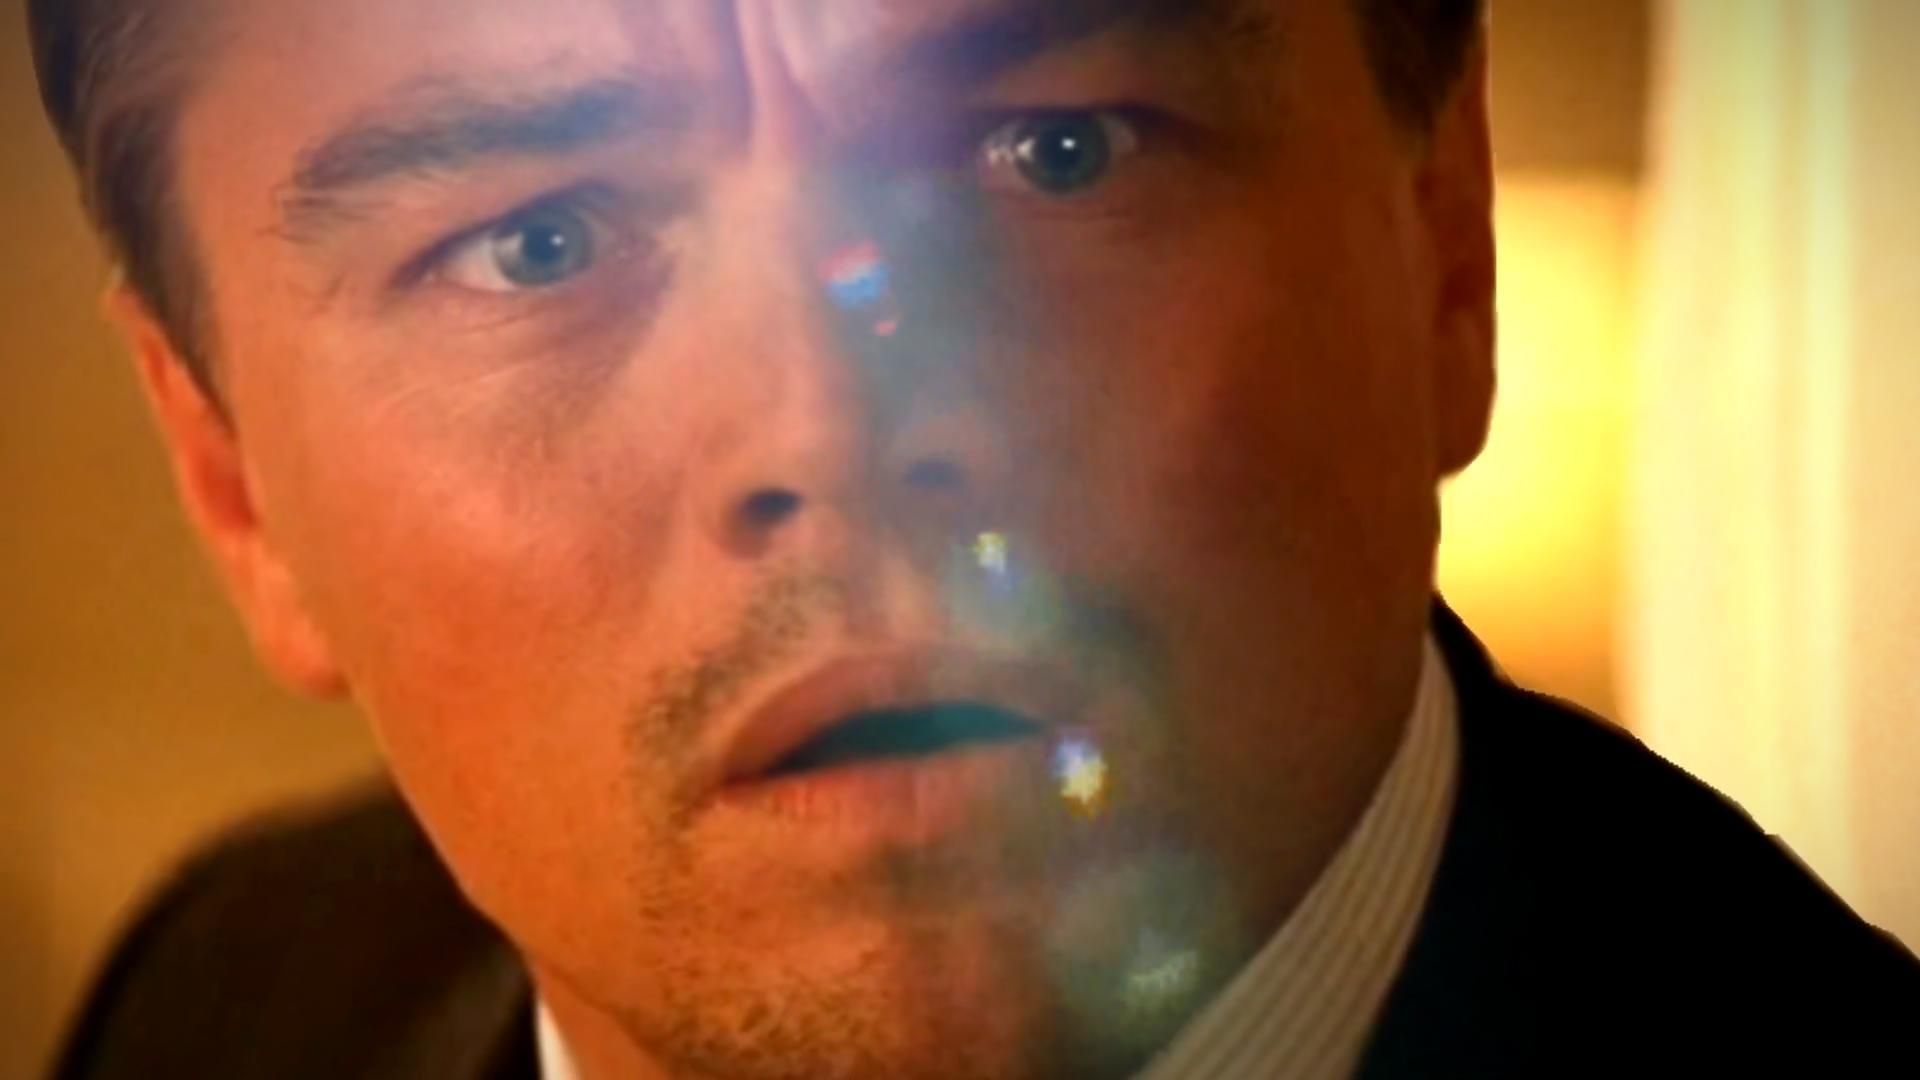 Una película de anime subestimada superó la taquilla de $ 839 millones de Christopher Nolan en su premisa 4 años antes